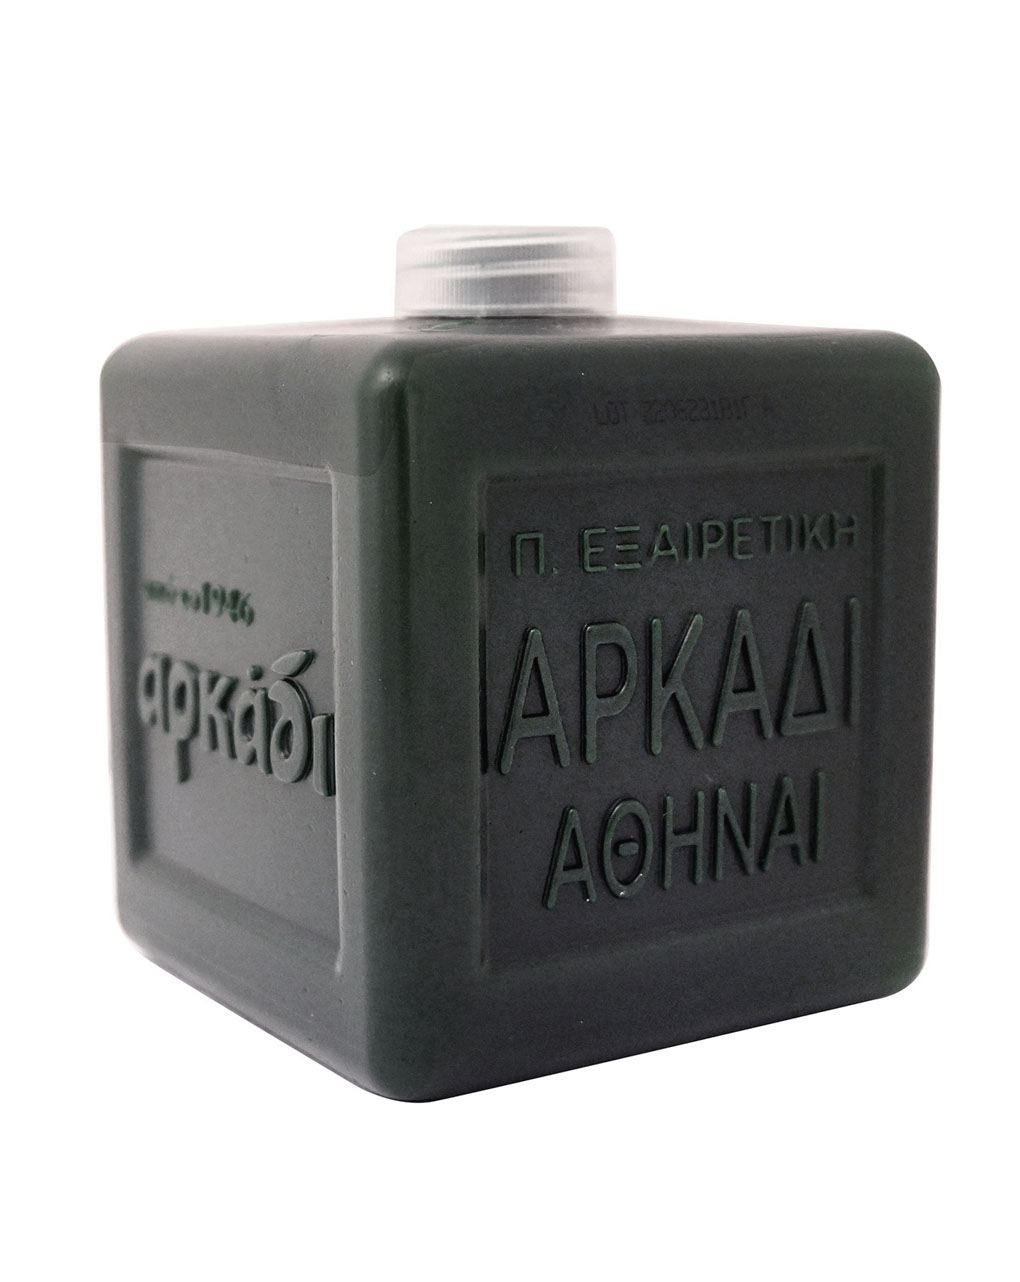 αρκάδι ανταλλακτικό υγρό πράσινο σαπούνι χεριών 500ml